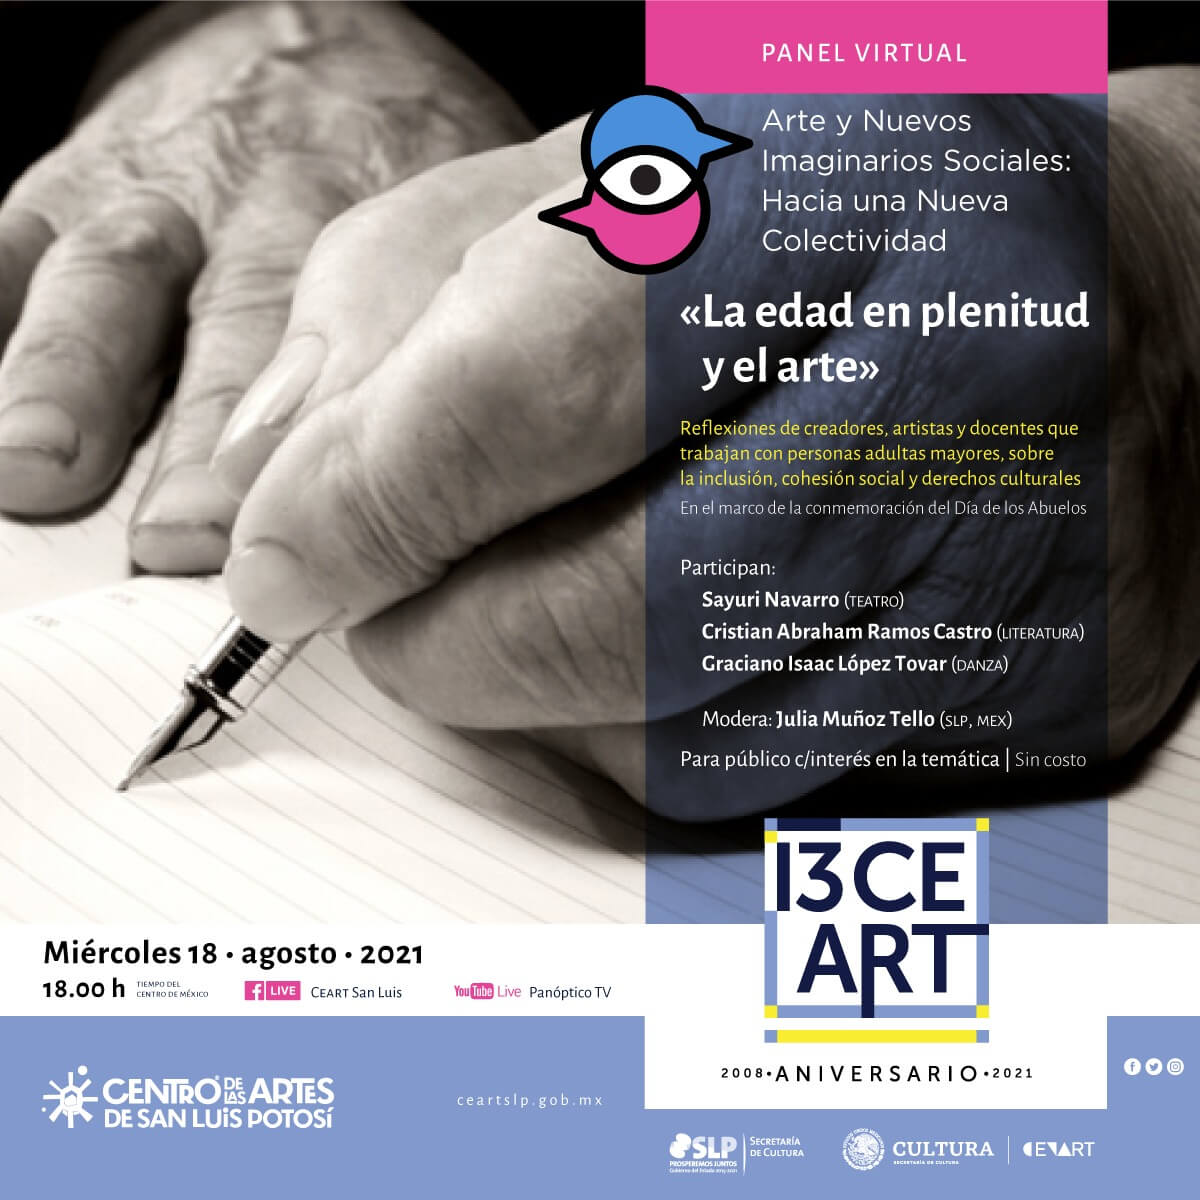 La Secretaría de Cultura de San Luis Potosí, invita al panel virtual “Arte y Nuevos Imaginarios Sociales: Hacia una Nueva Colectividad”